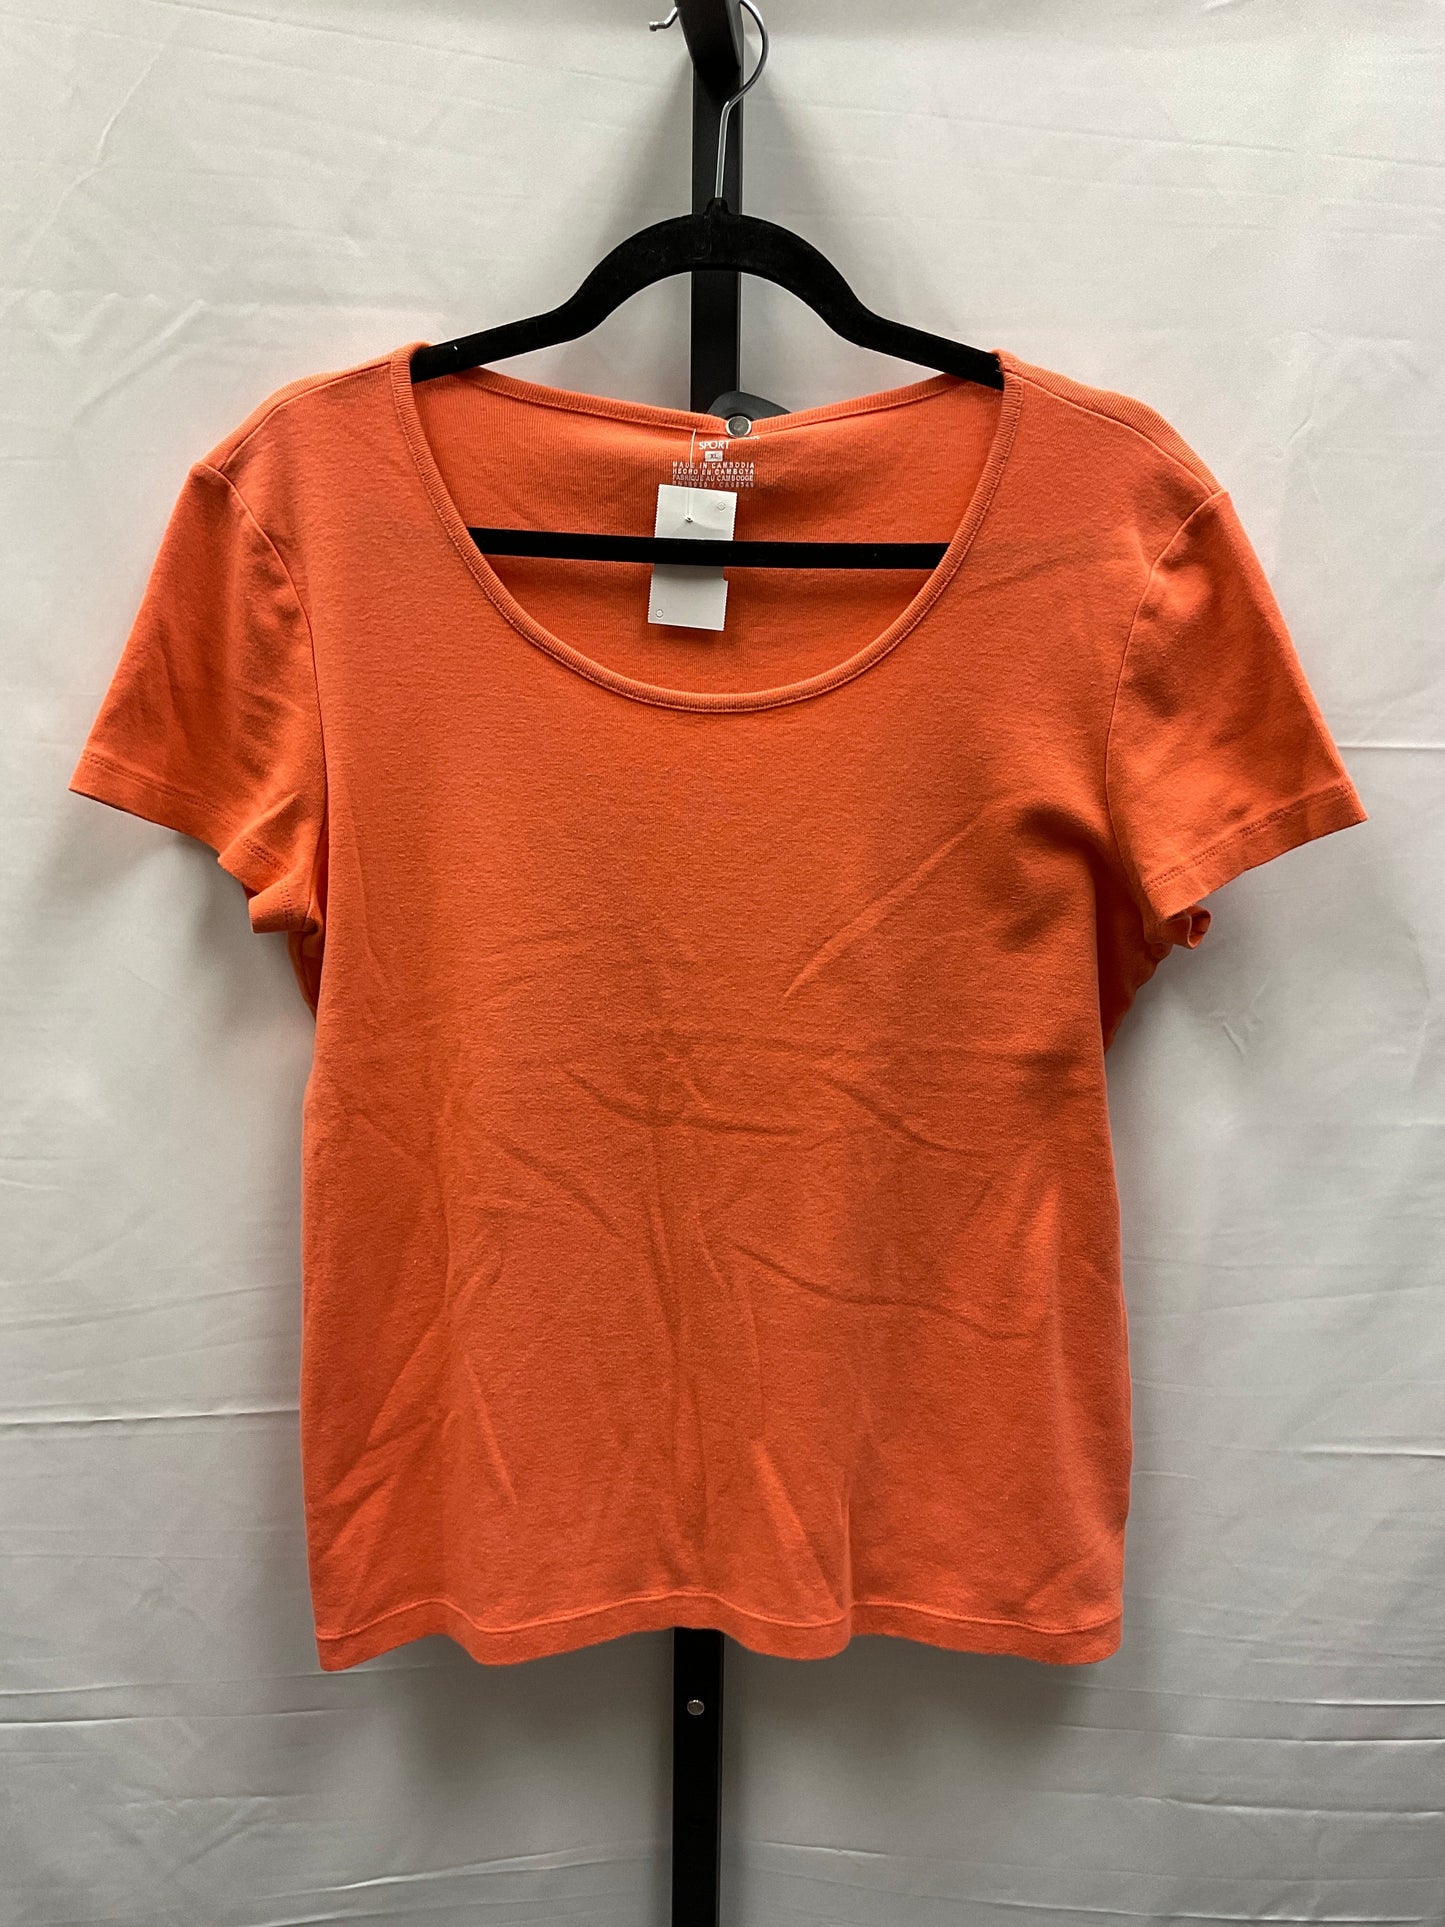 Orange Top Short Sleeve Basic Jones New York, Size Xl